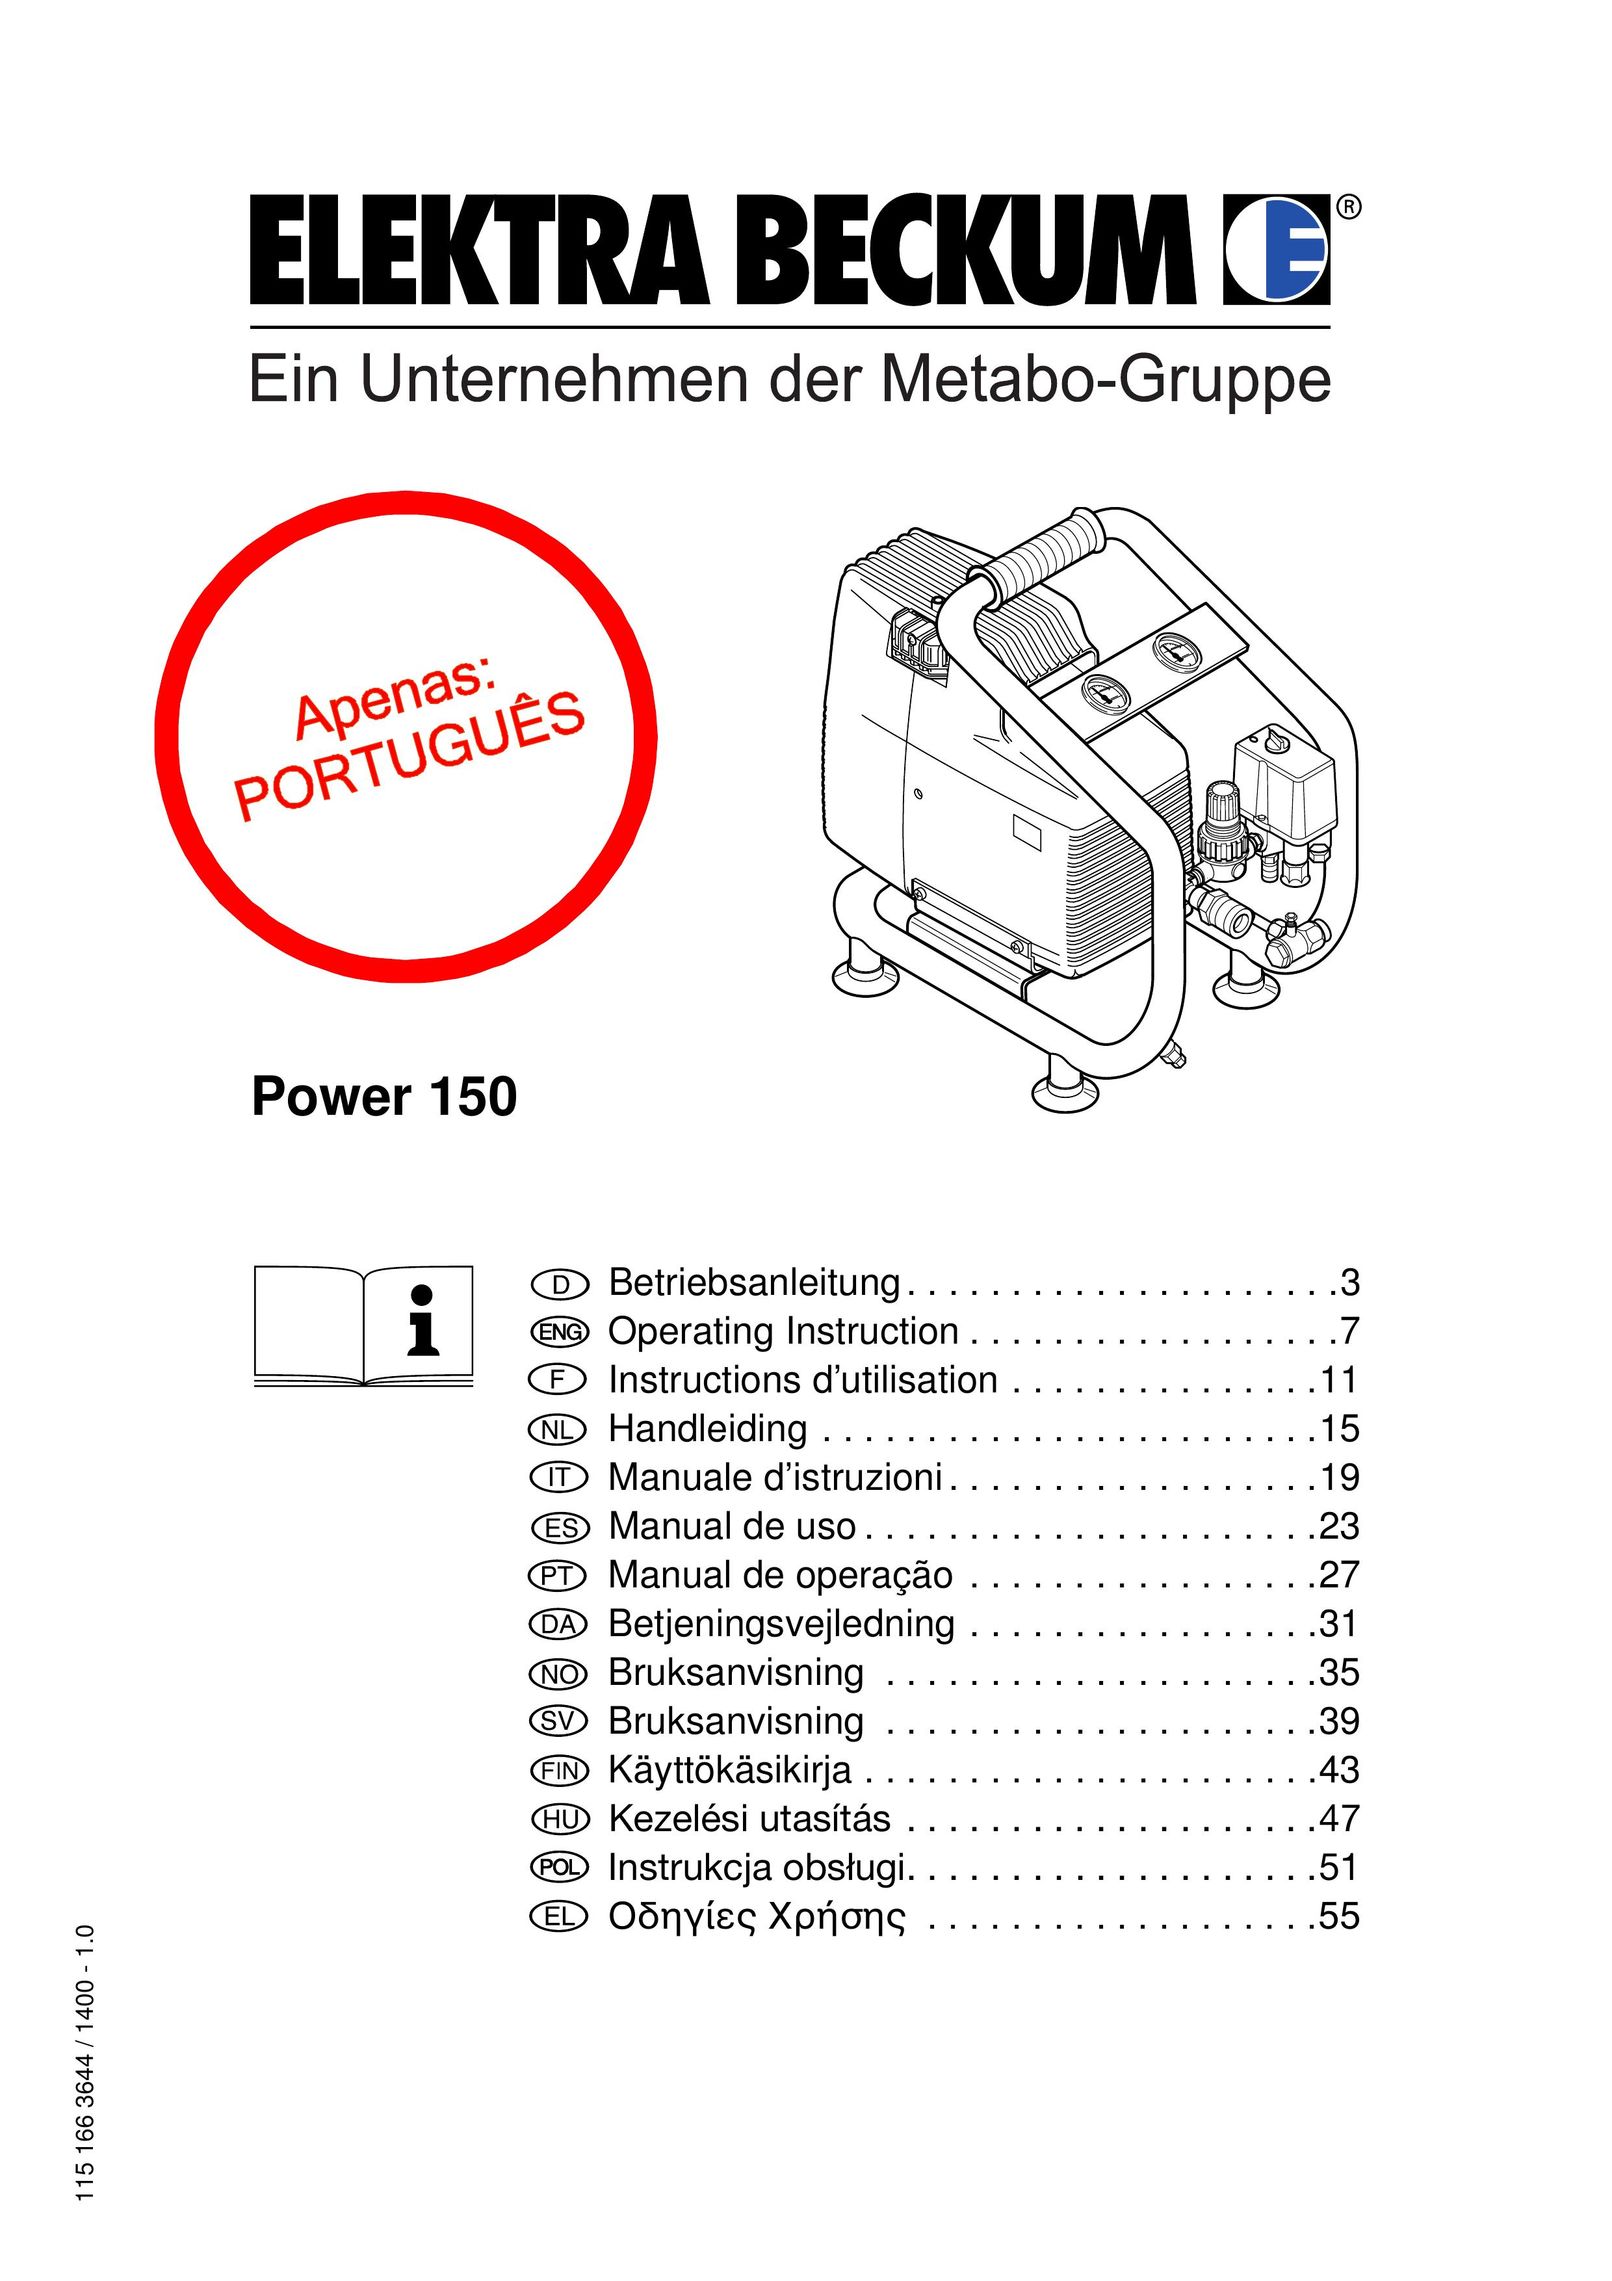 Elektra Beckum Power 150 Air Compressor User Manual